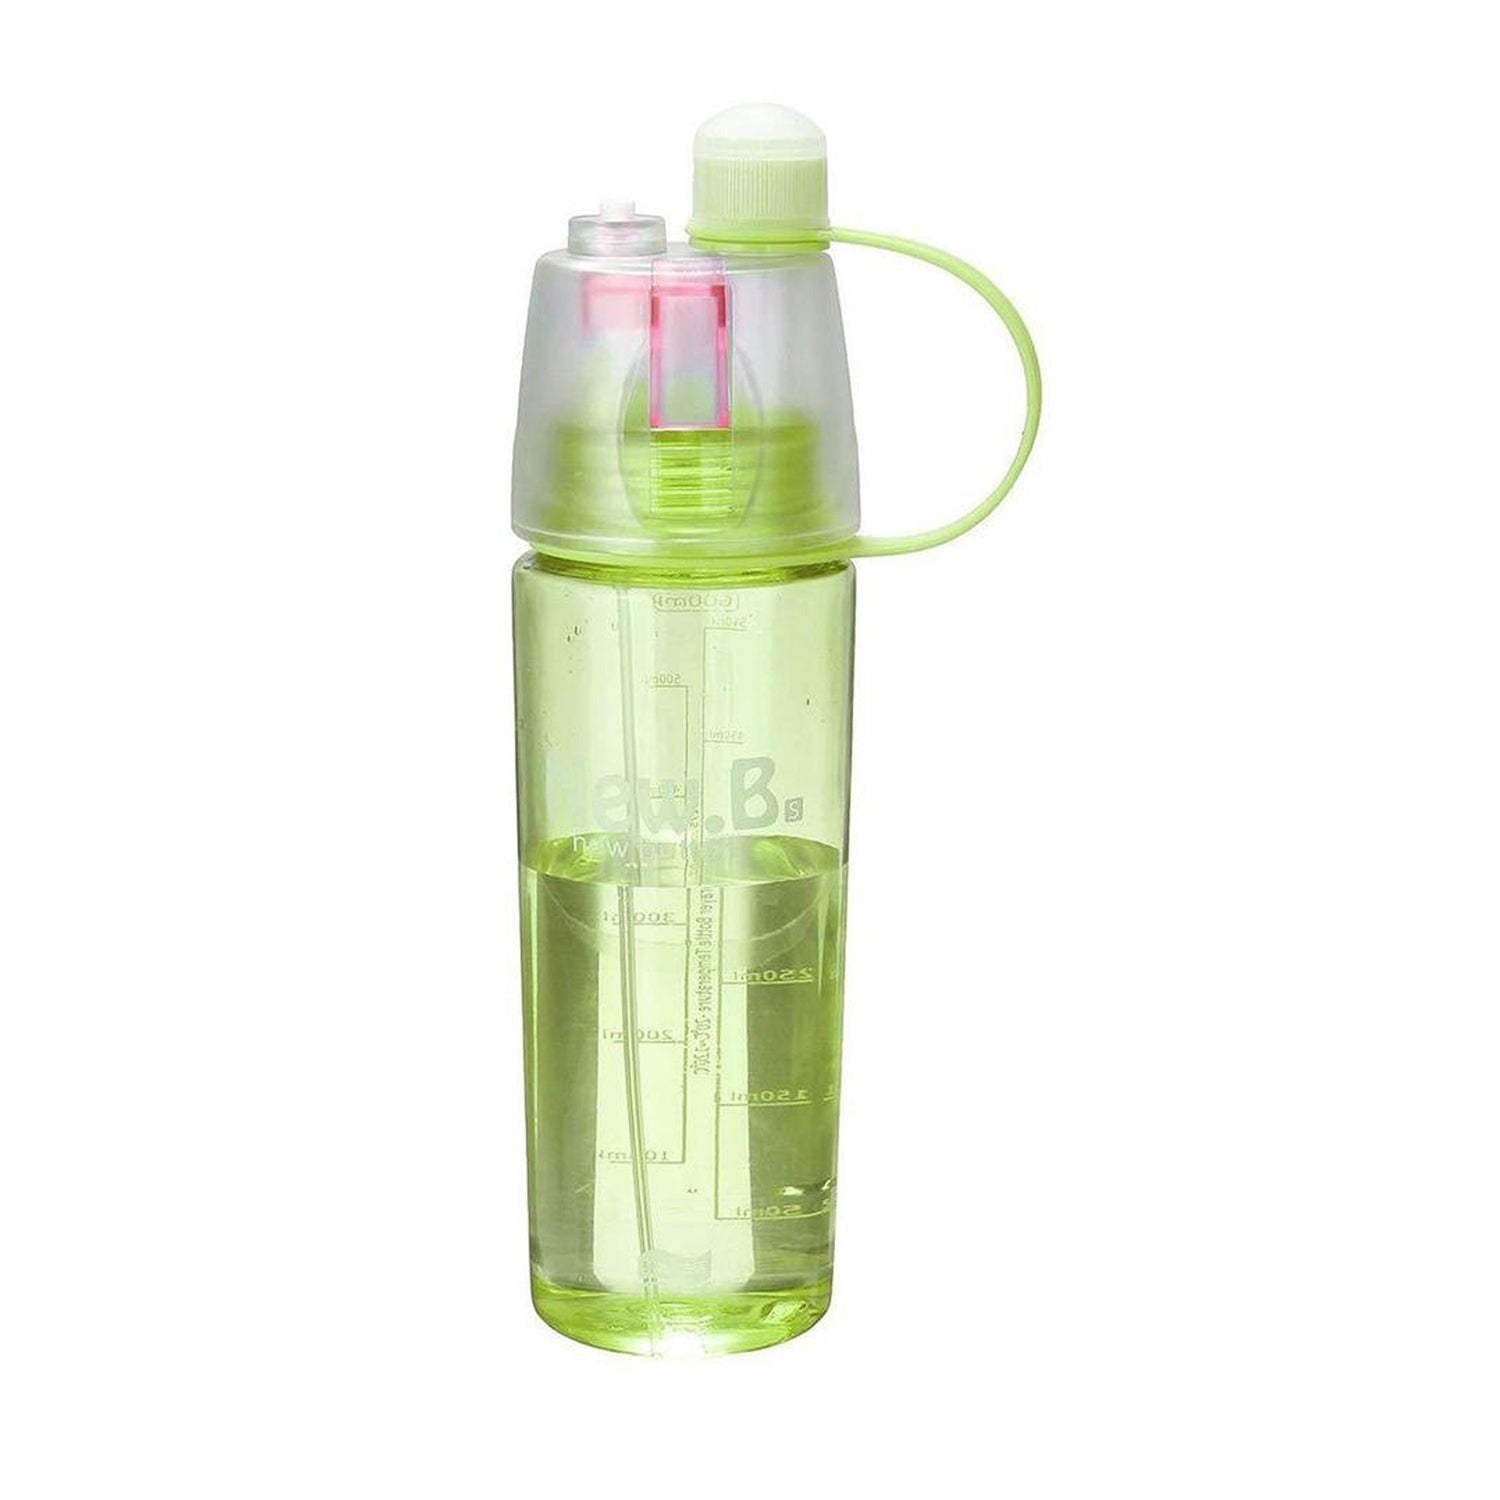 0540 New B Portable Water Bottle DeoDap